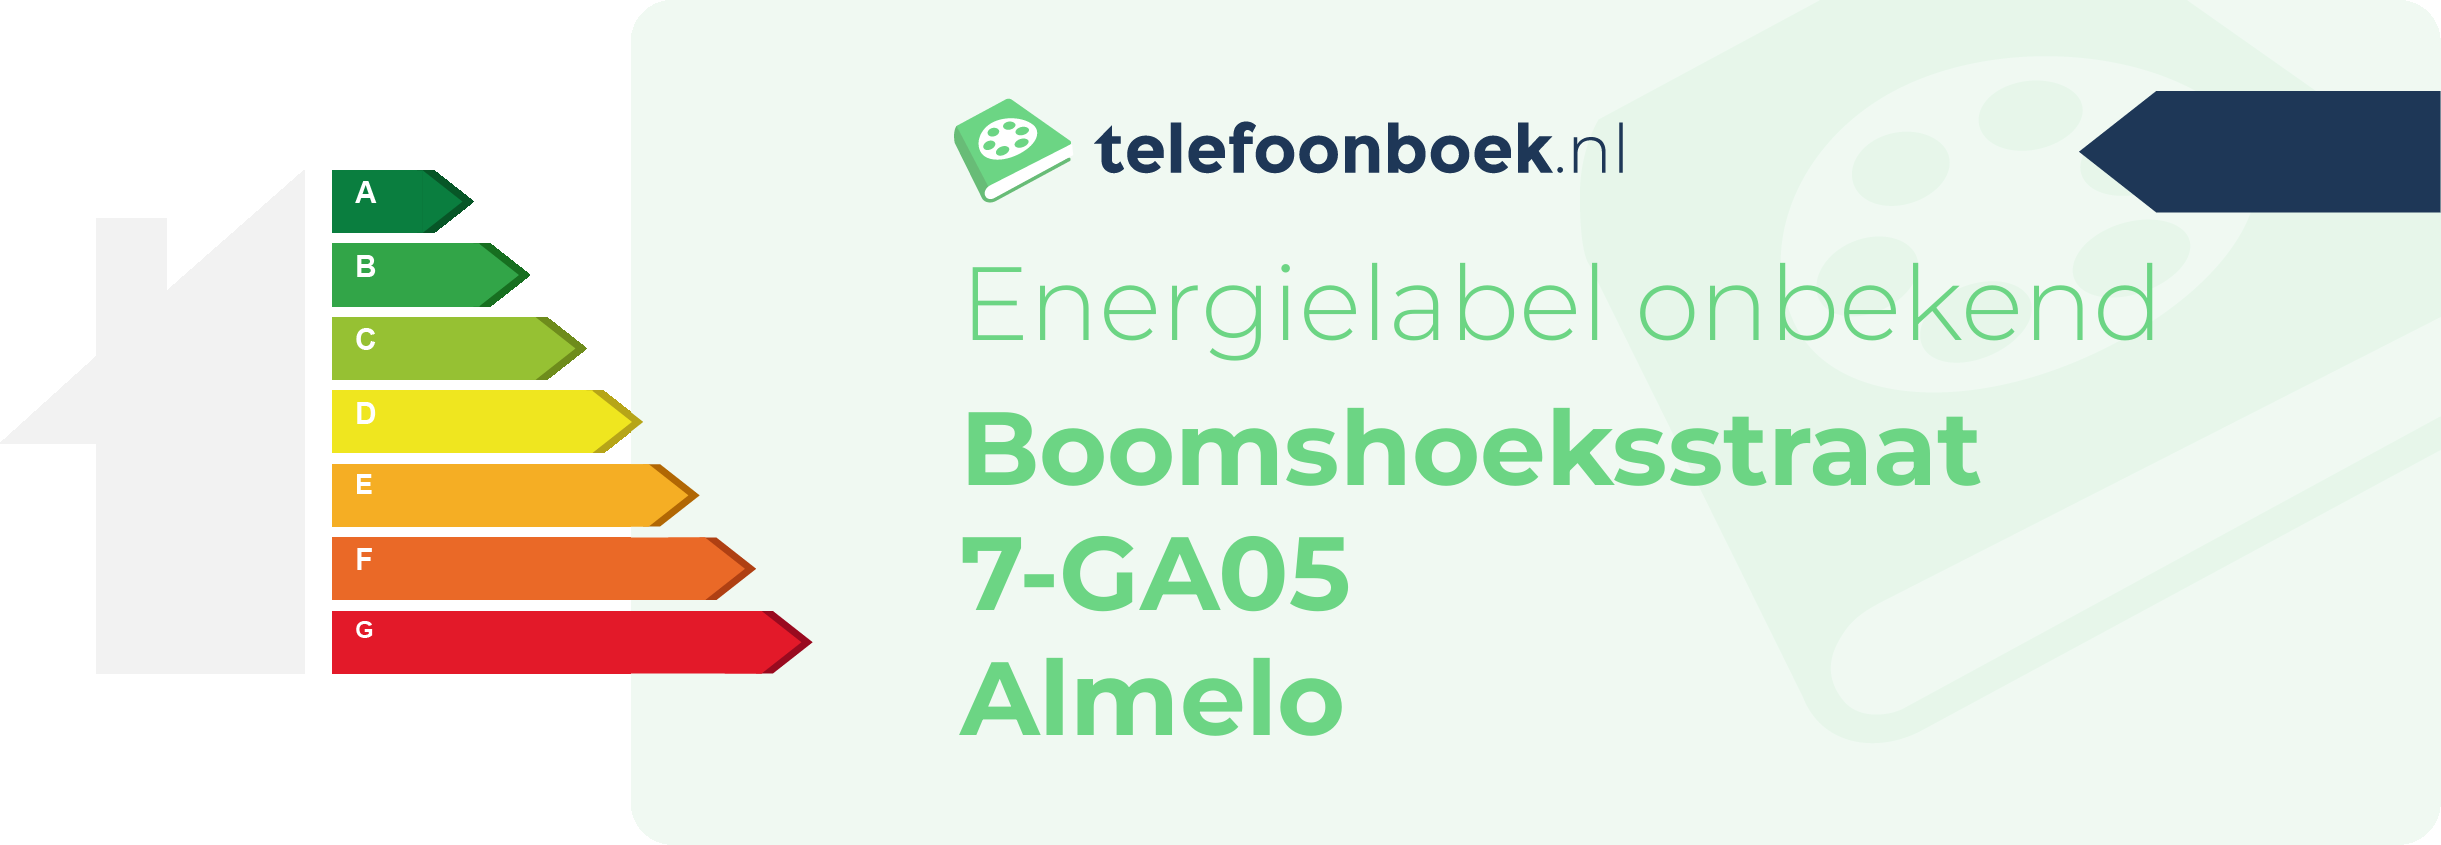 Energielabel Boomshoeksstraat 7-GA05 Almelo